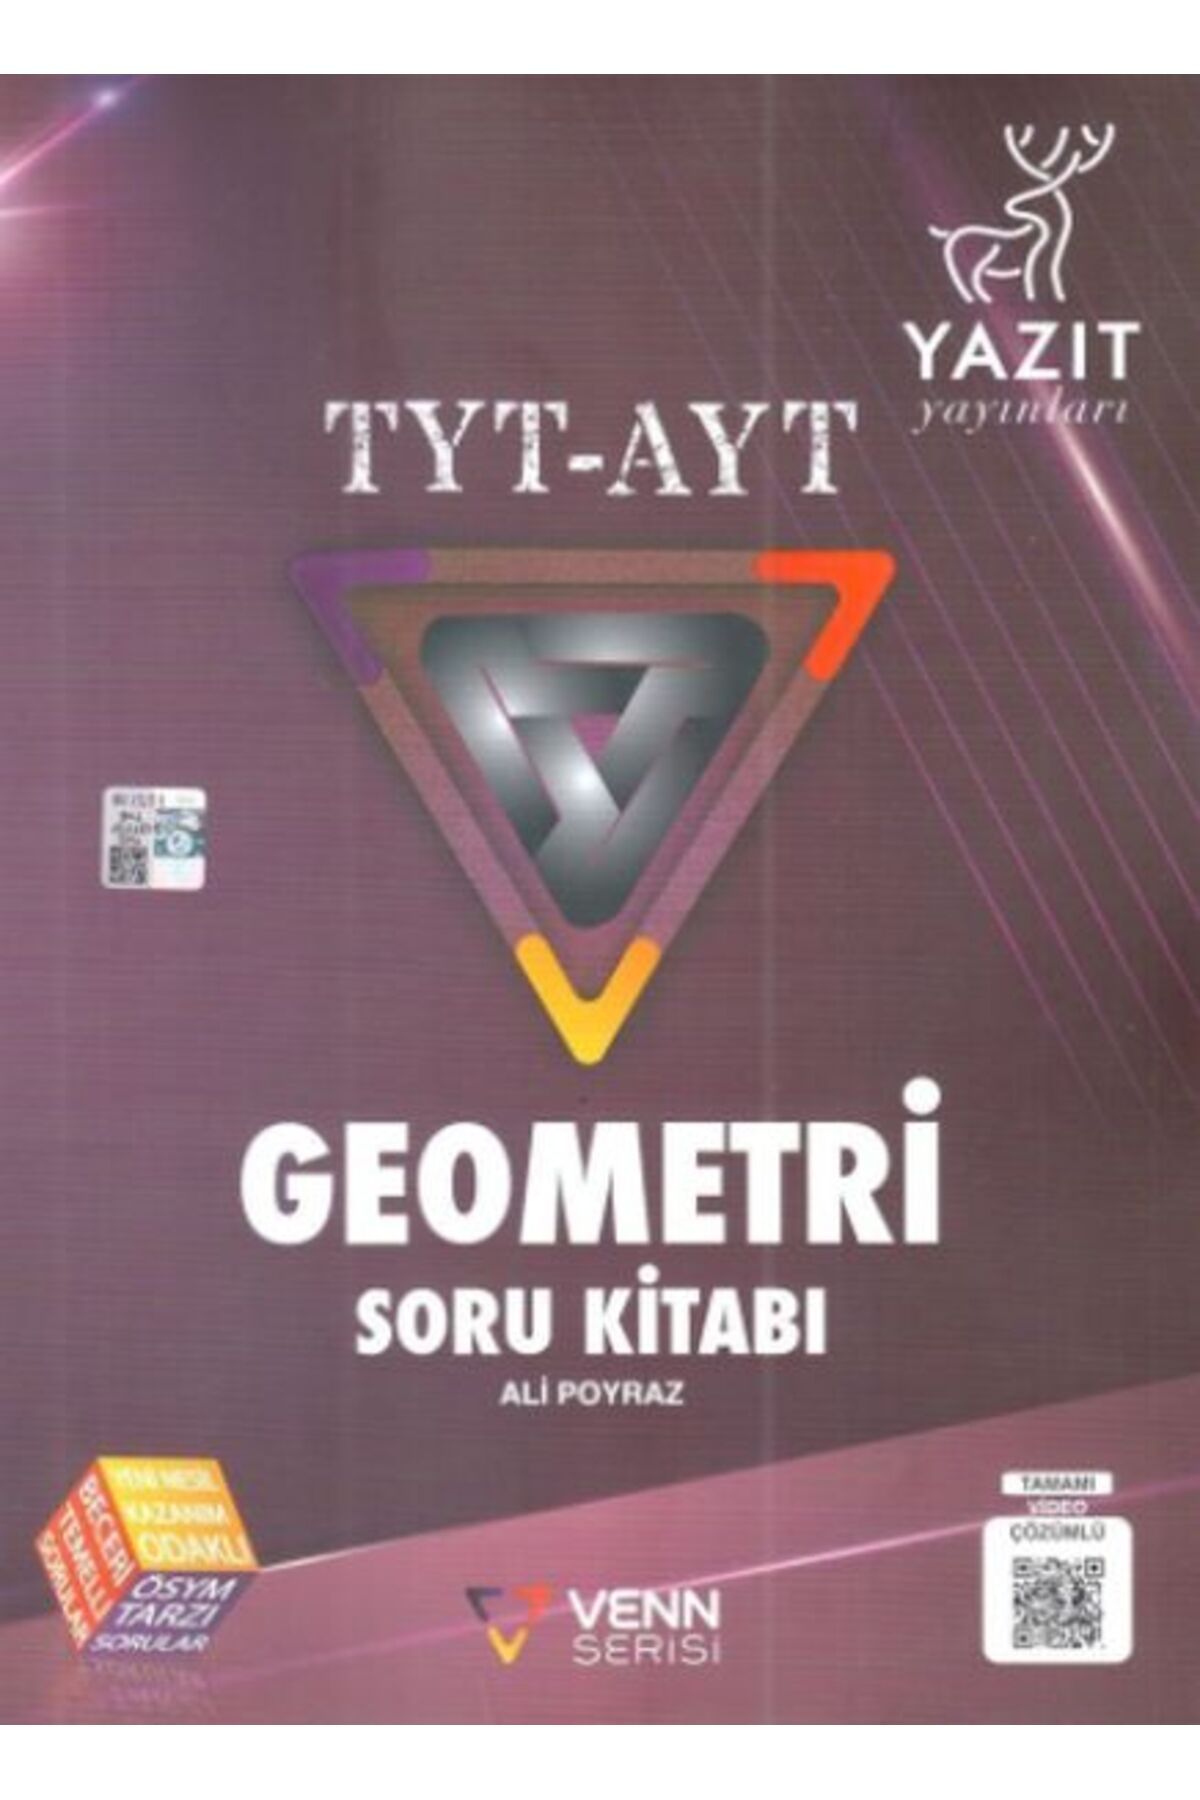 Yazıt Yayıncılık Yazıt TYT AYT Geometri Venn Serisi Soru Kitabı